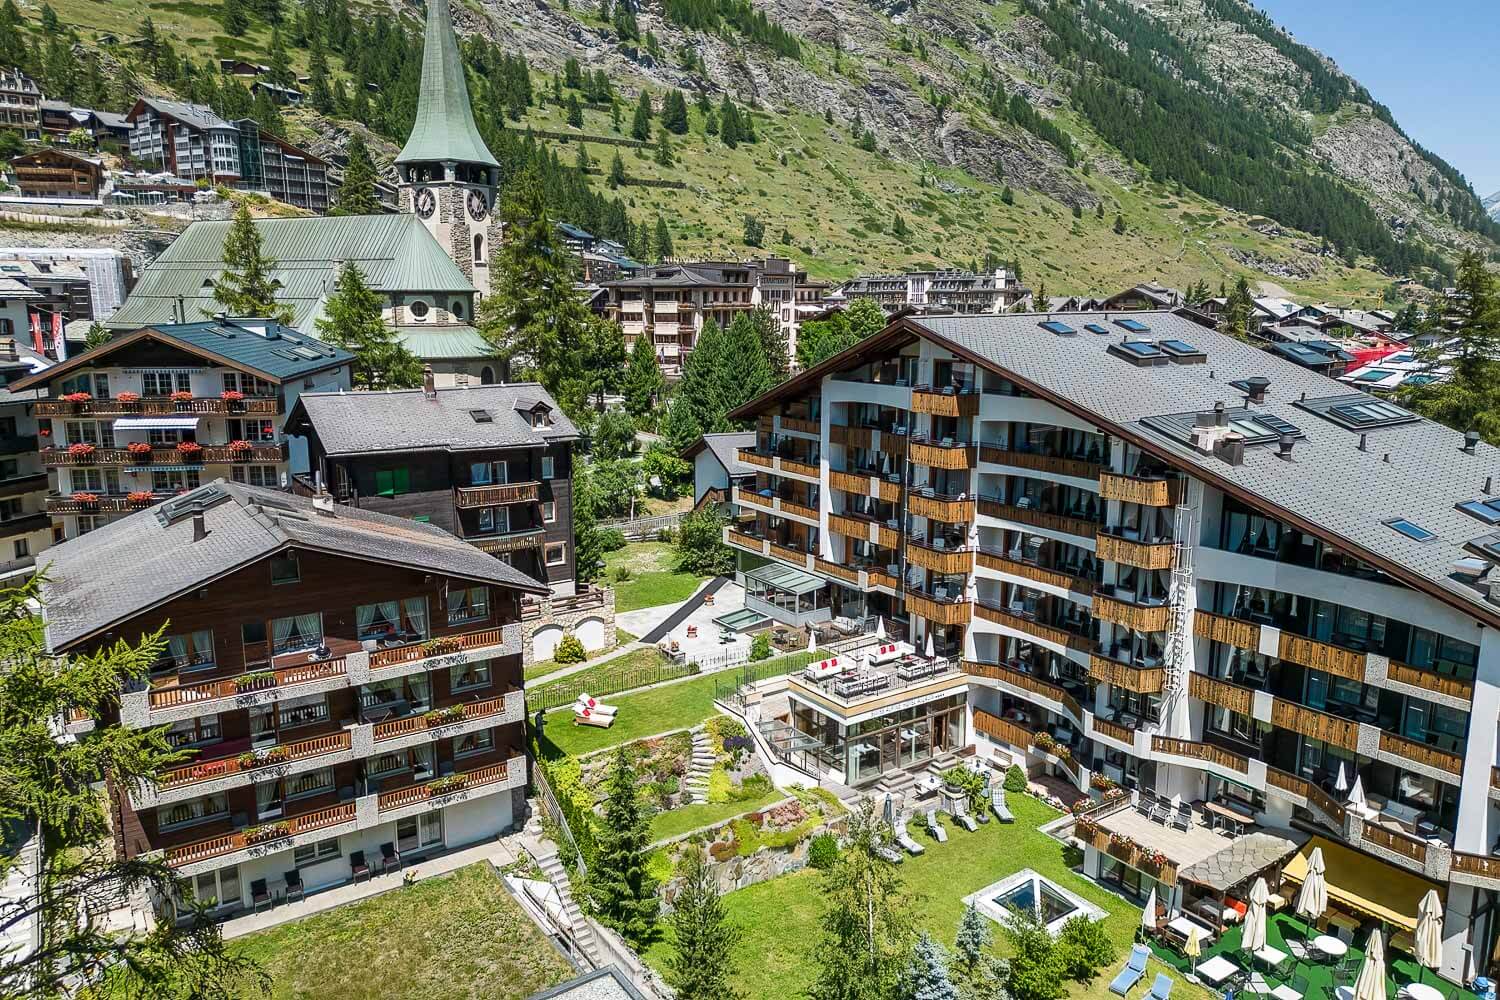 Swiss Alpine Hotel Allalin in Zermatt